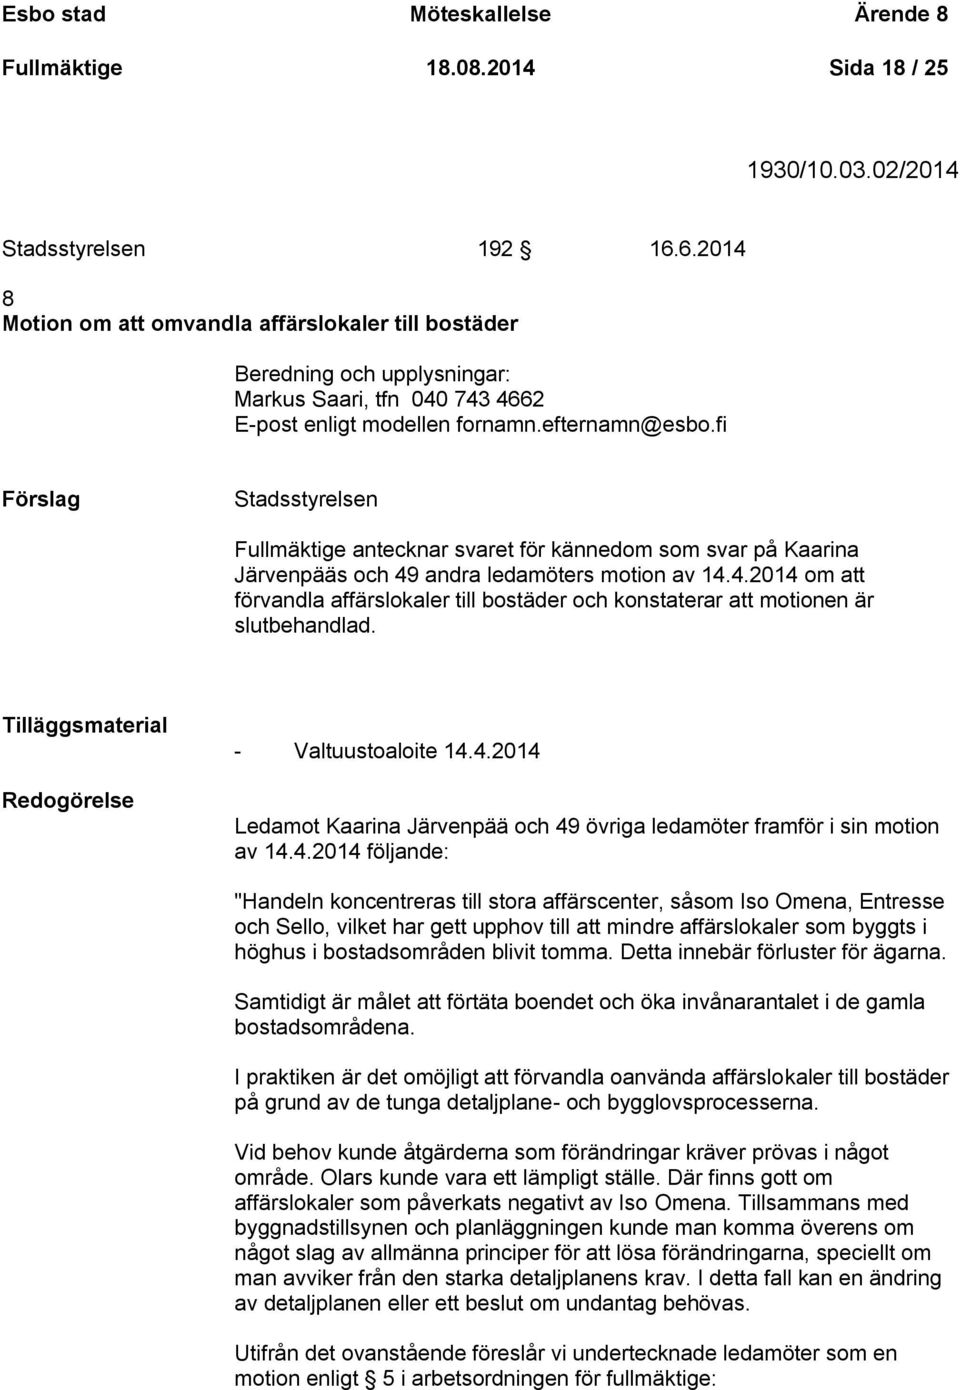 fi Stadsstyrelsen Fullmäktige antecknar svaret för kännedom som svar på Kaarina Järvenpääs och 49 andra ledamöters motion av 14.4.2014 om att förvandla affärslokaler till bostäder och konstaterar att motionen är slutbehandlad.